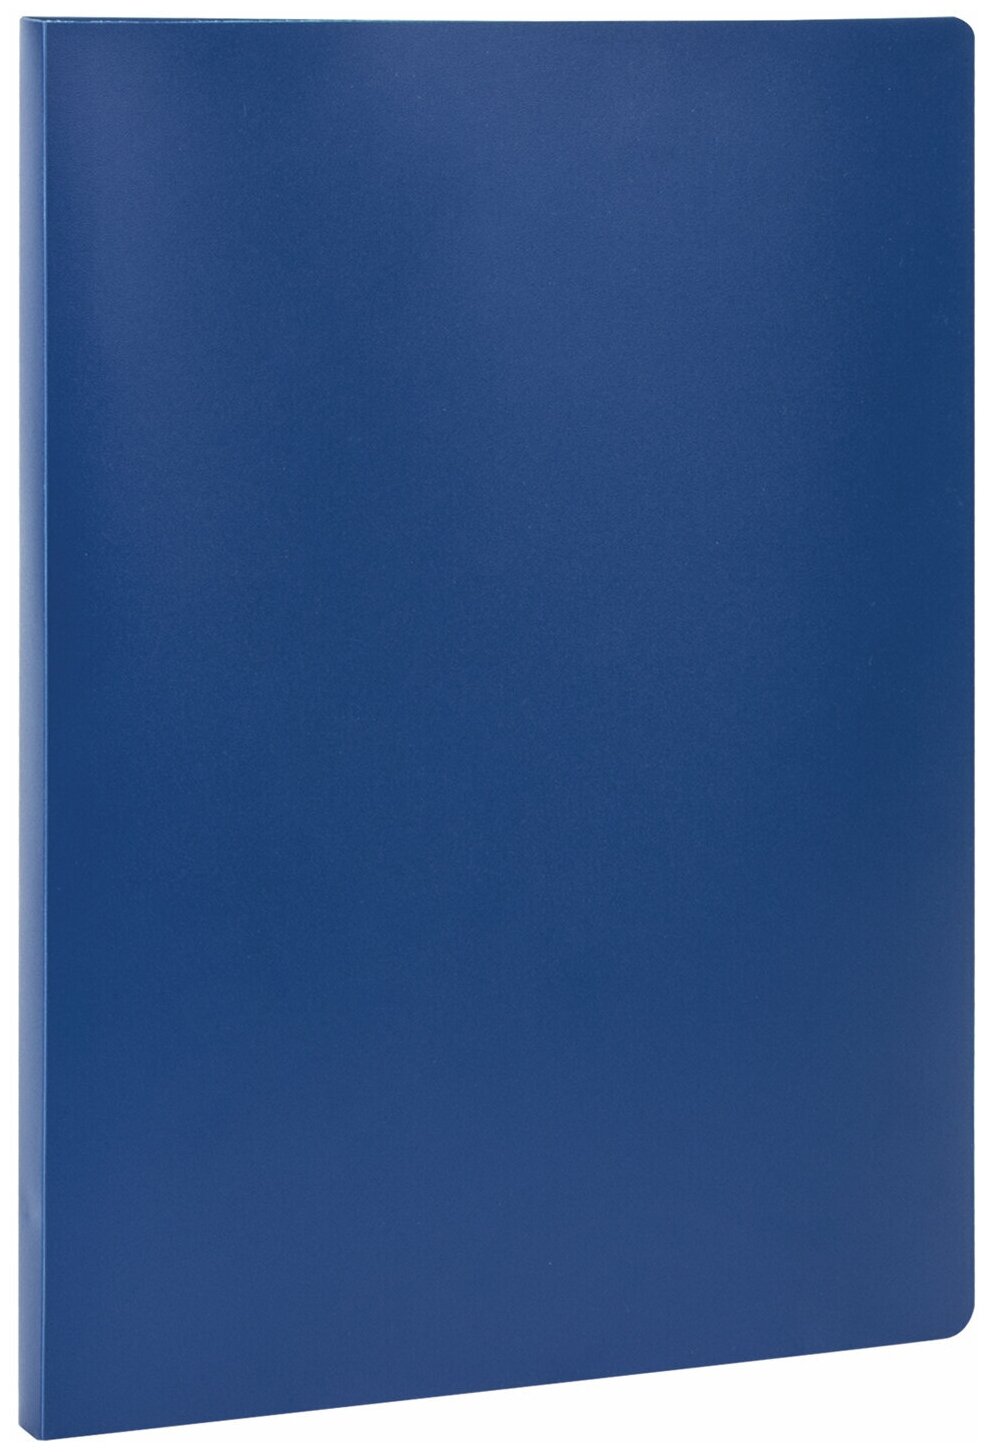 Папка Staff с металлическим скоросшивателем, синяя, до 100 листов, 0,5 мм (229224)